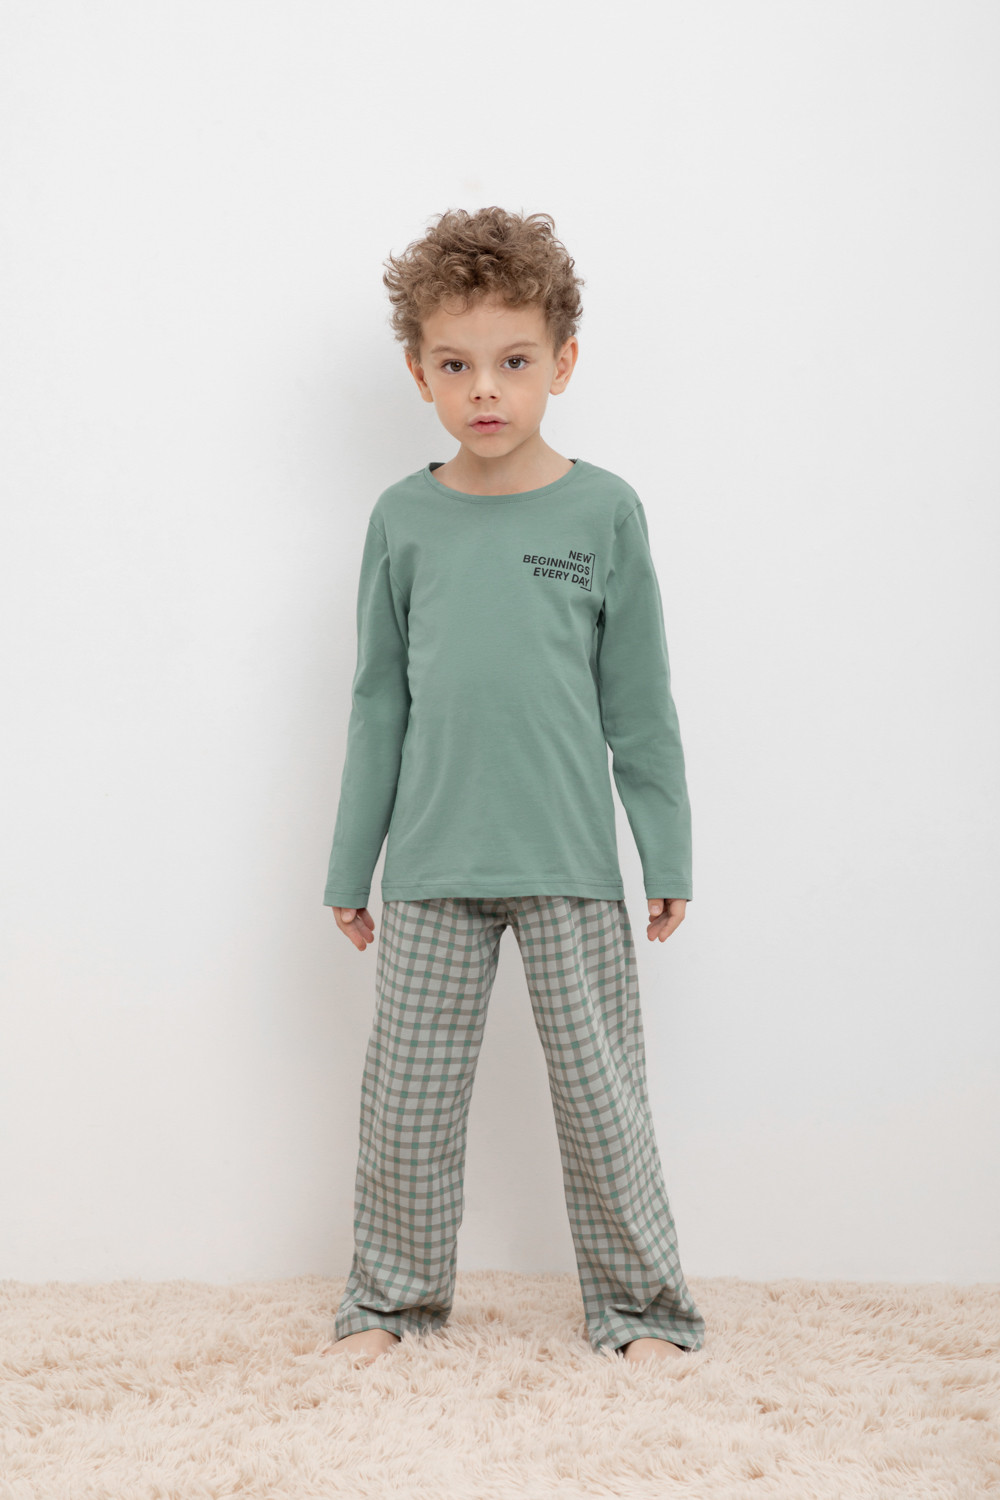 Пижама детская CROCKID М 1303-1, М 3702, весенний зеленый, бежевая клетка, 110 футболка для мальчиков бежевая с рисунком и текстом